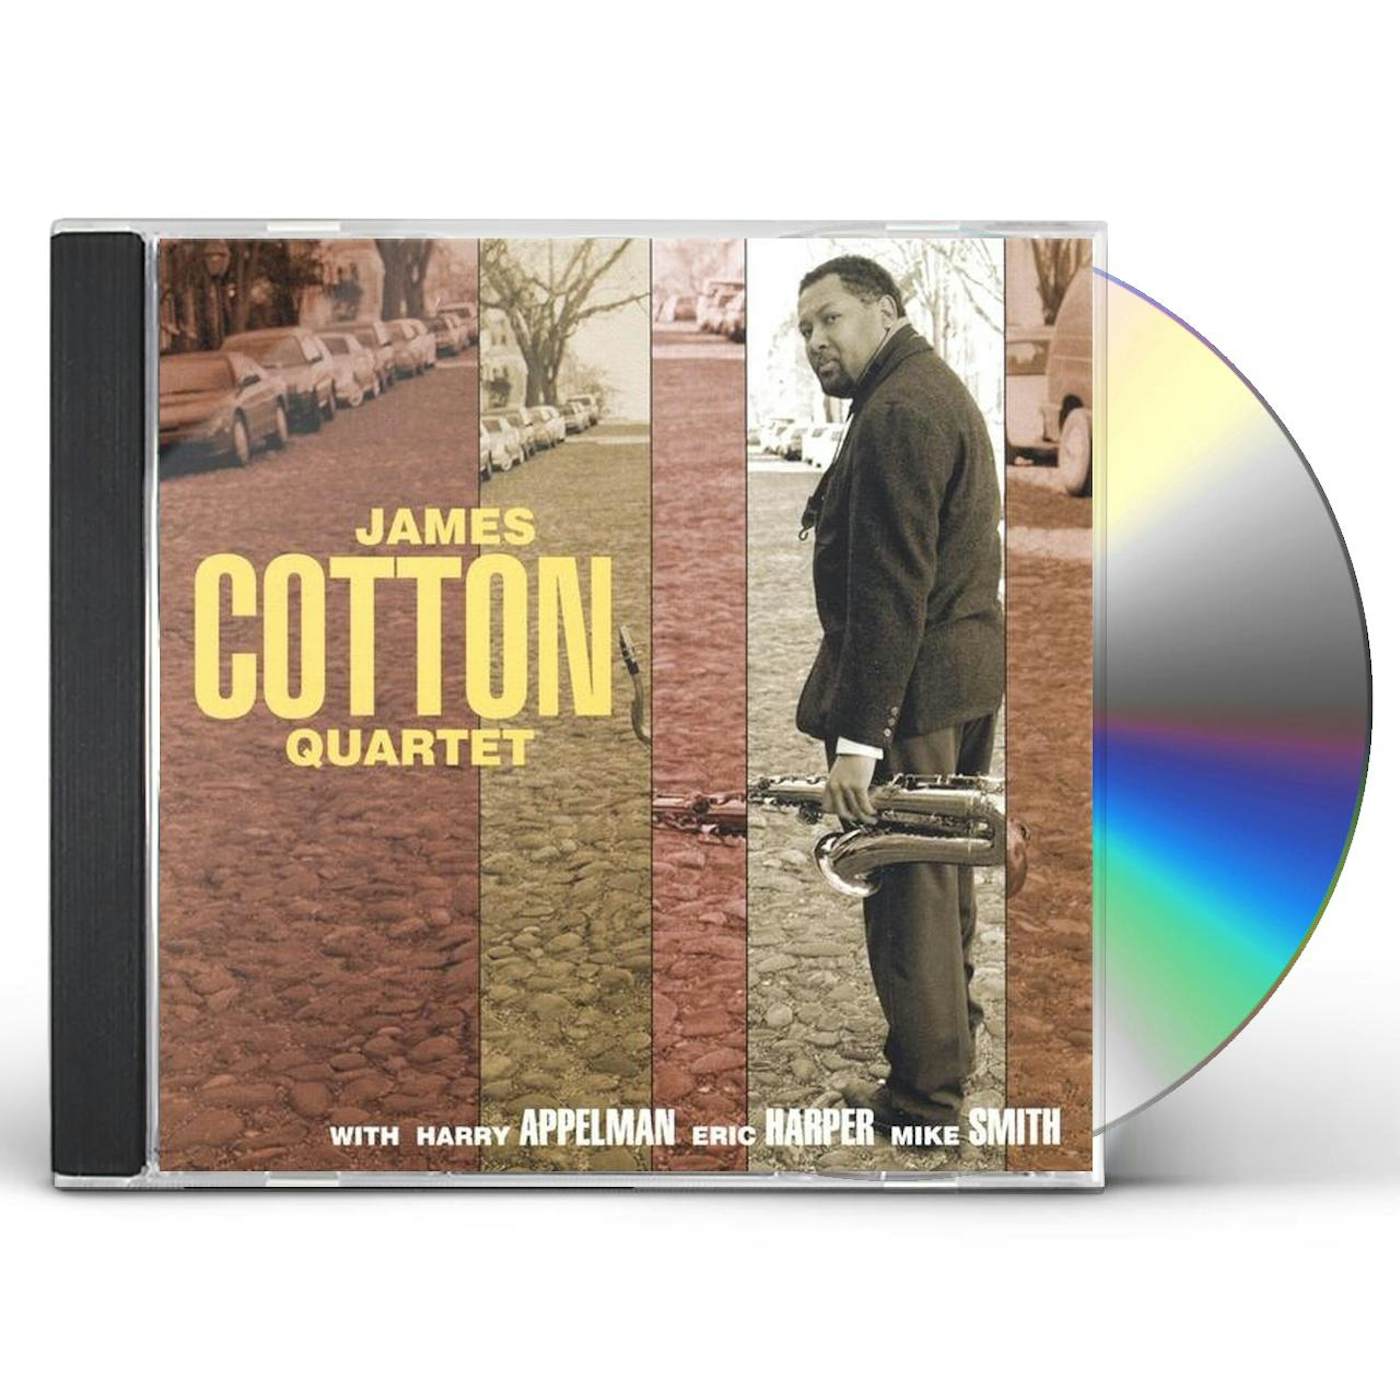 JAMES COTTON QUARTET CD